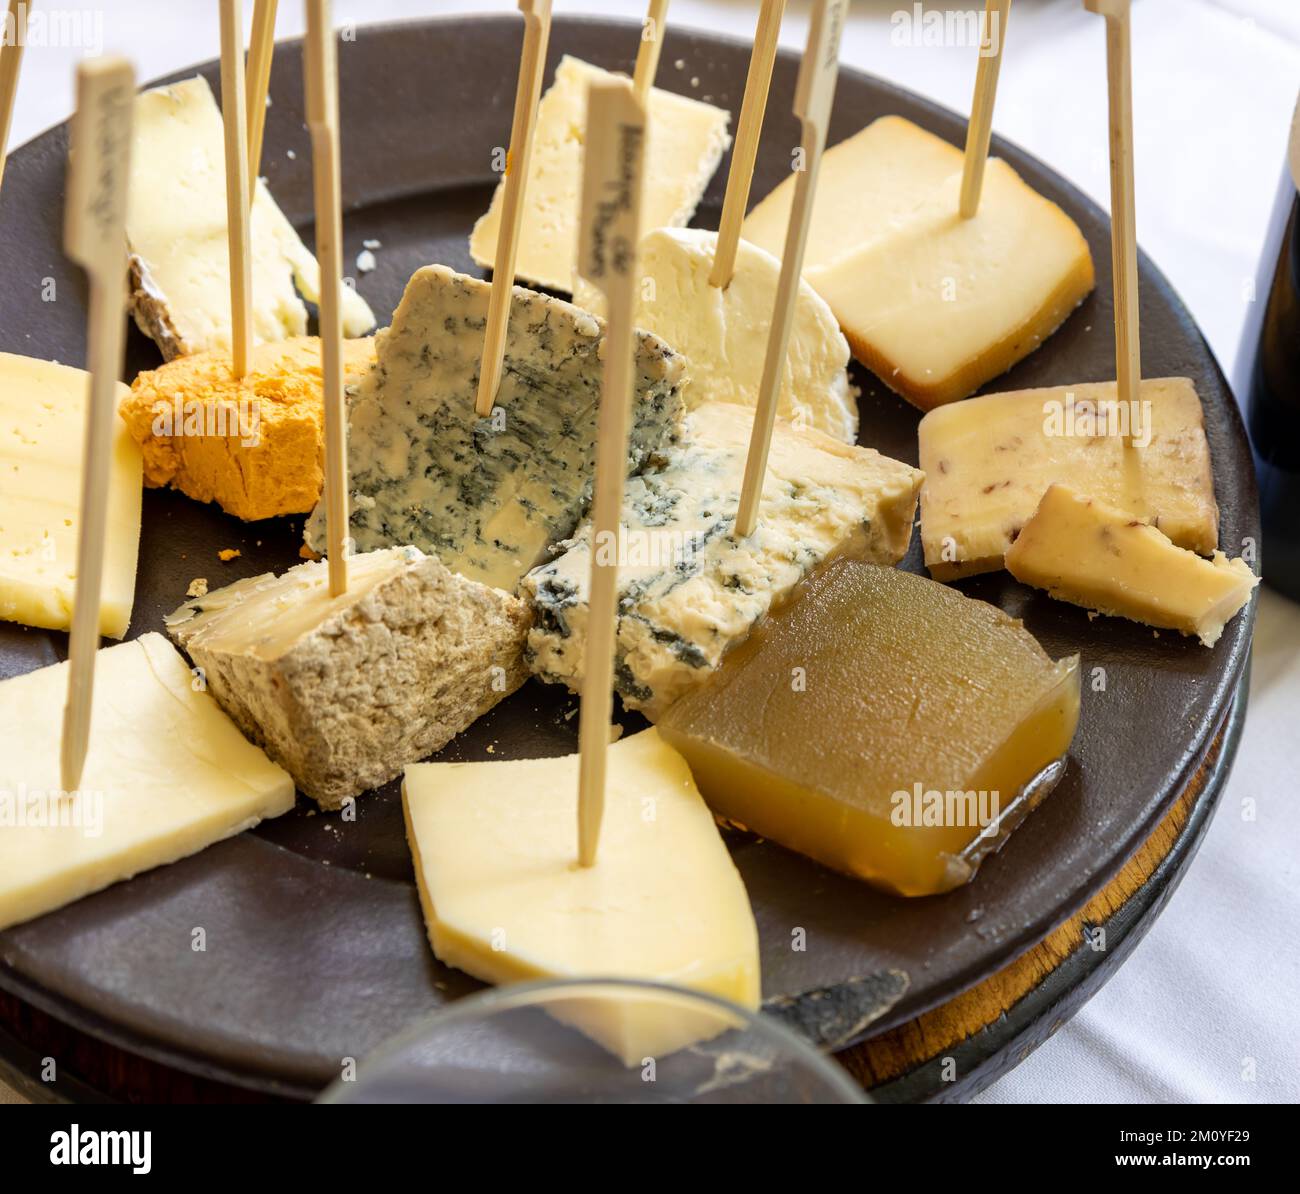 Assiette avec de nombreuses portions de différents fromages Asturiens. Aliments à base de lait des Asturies. Banque D'Images